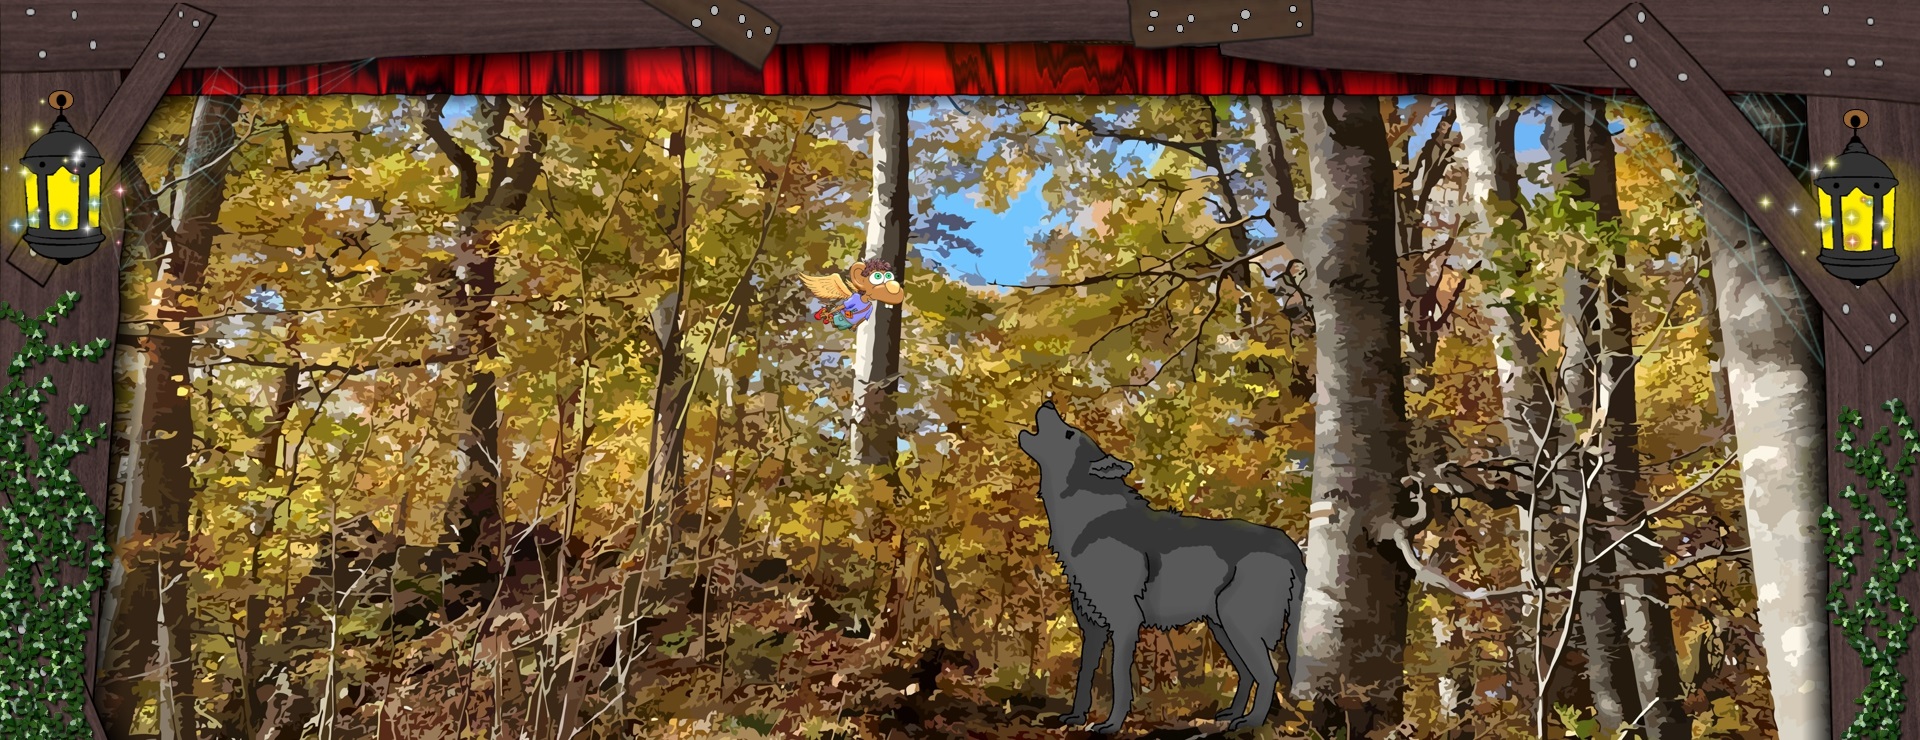 Bannerbild - Ein Wolf im Wald